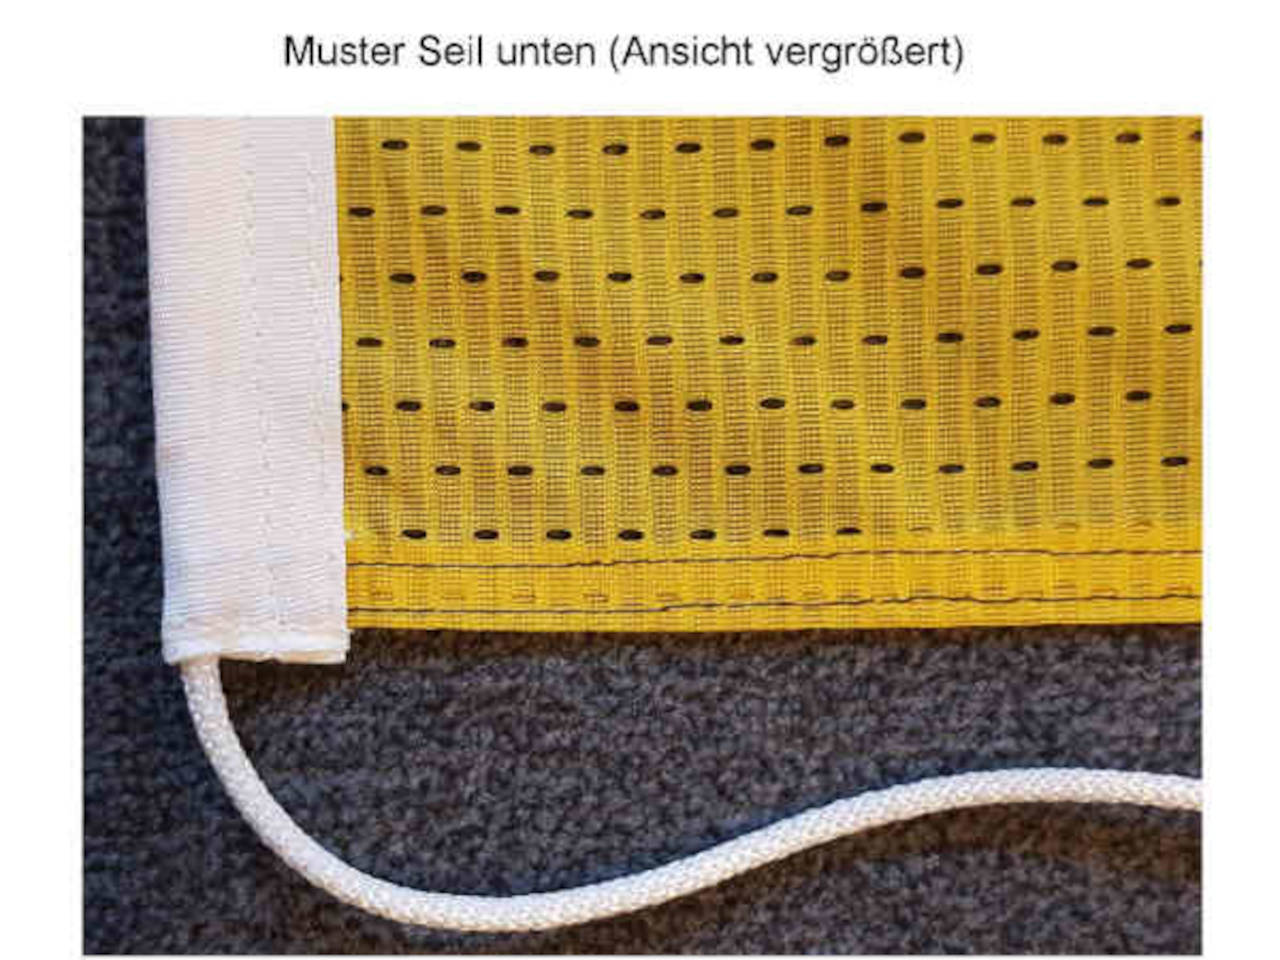 Muster eines Seils an Flagge aus gelochtem Spezialmeshpolyester 120 g/m²